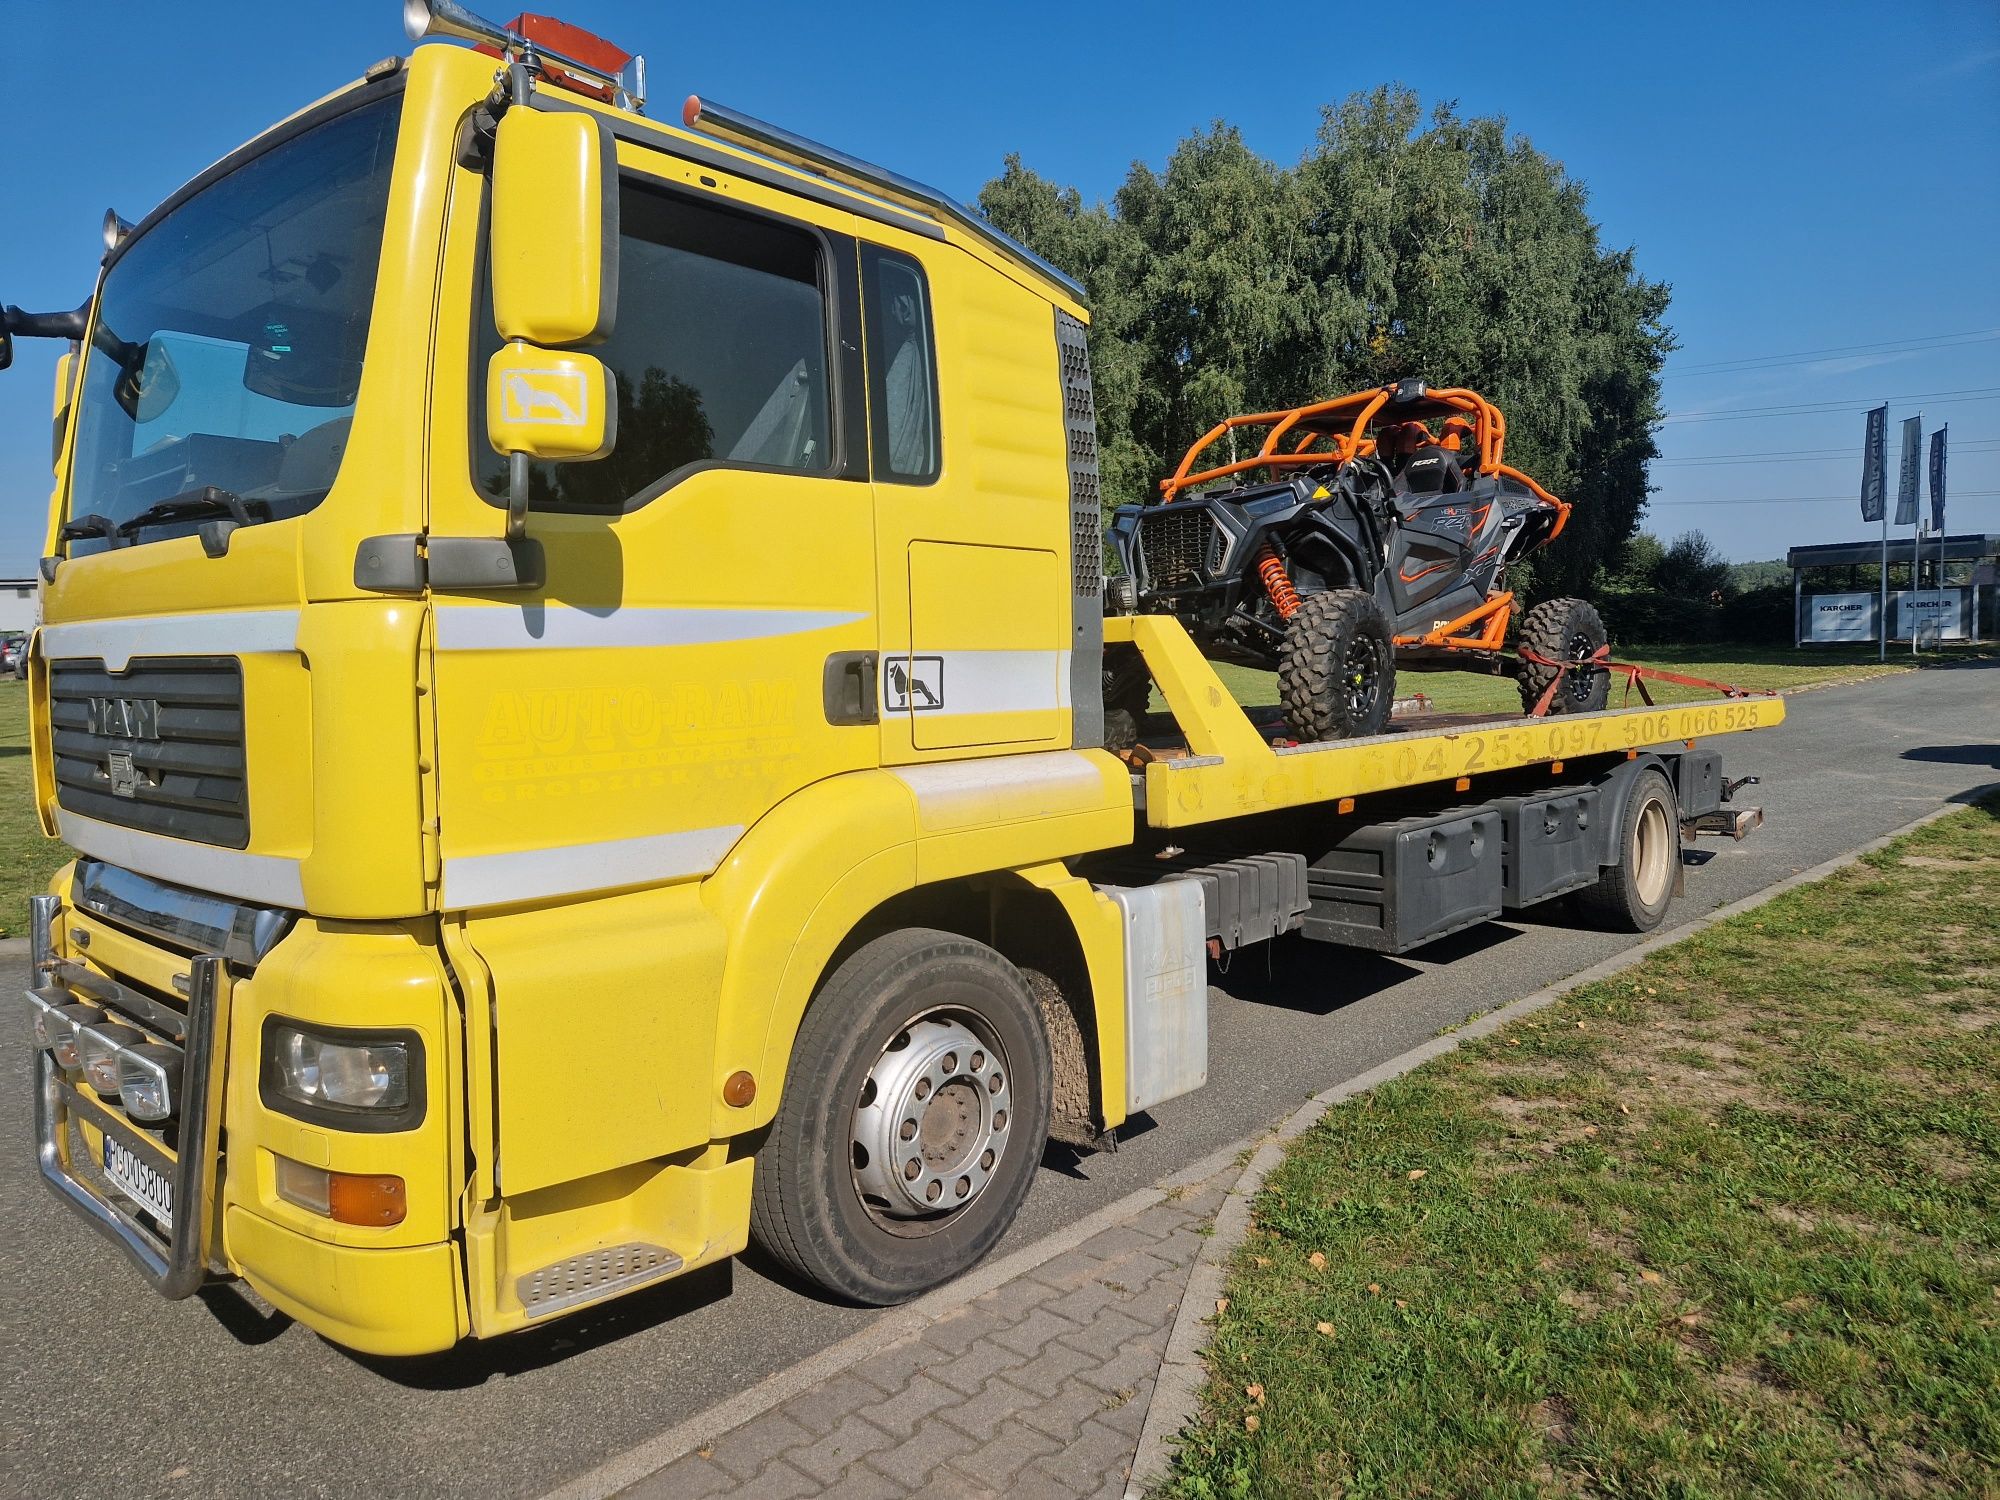 Pomoc drogowa  holowanie tir  bus transport  maszyn Częstochowa 8 ton